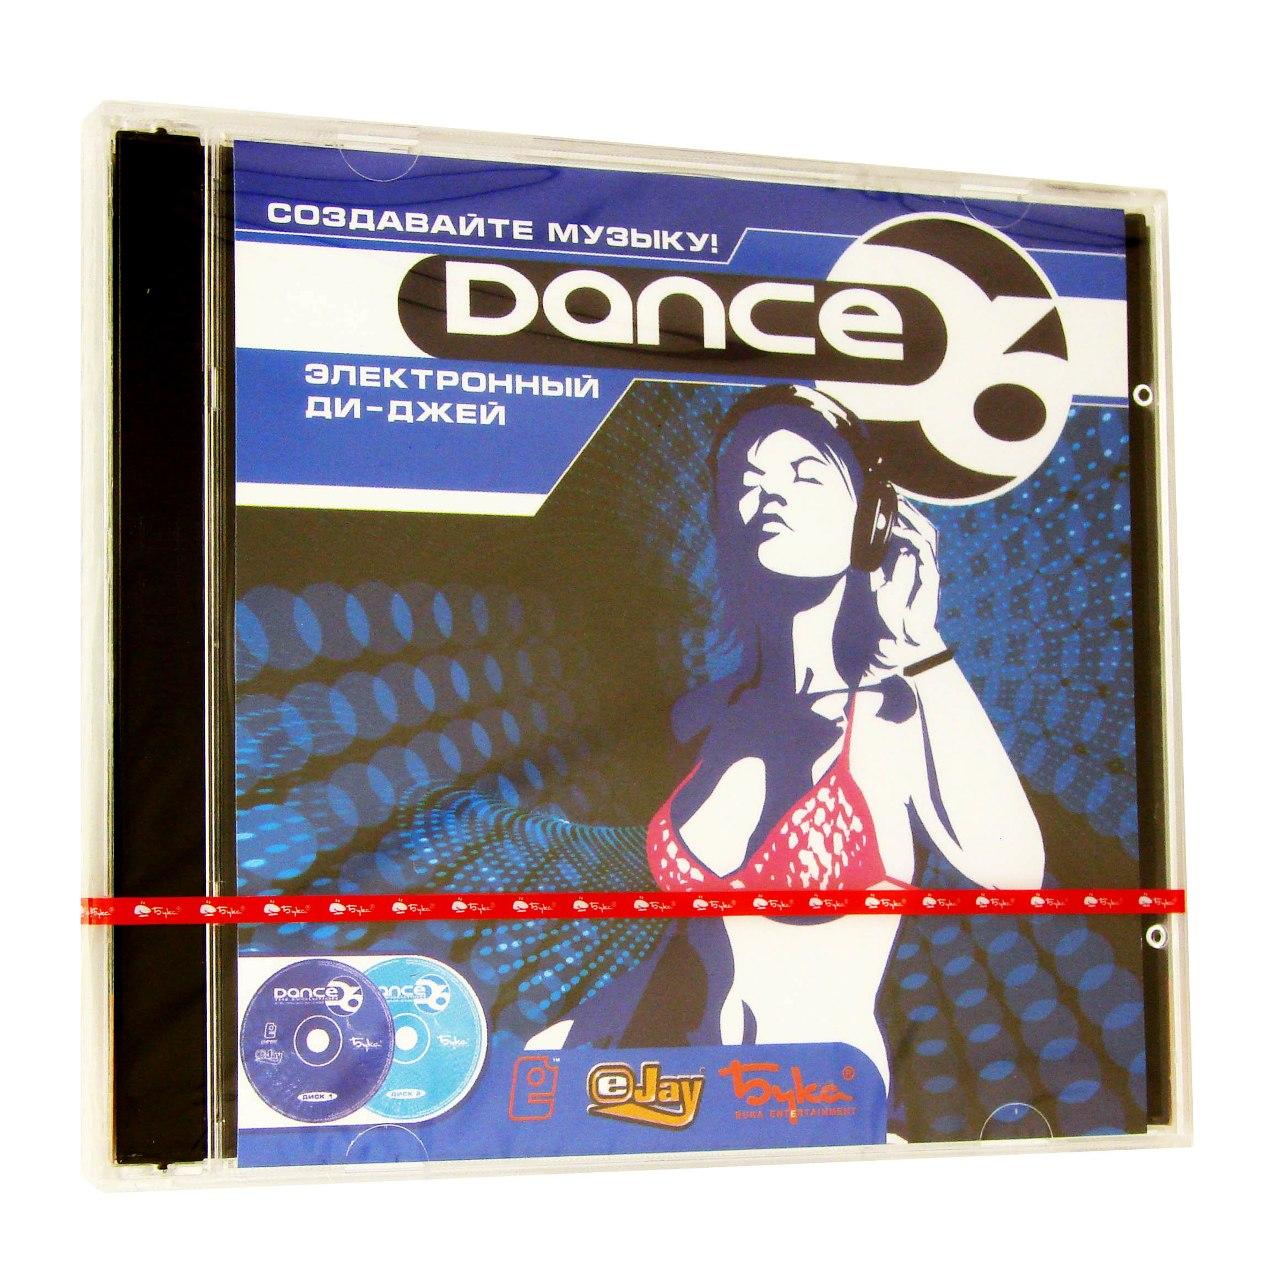 Компьютерный компакт-диск Электронный Ди Джей:Dance 6 (PC), фирма "Бука", 2CD